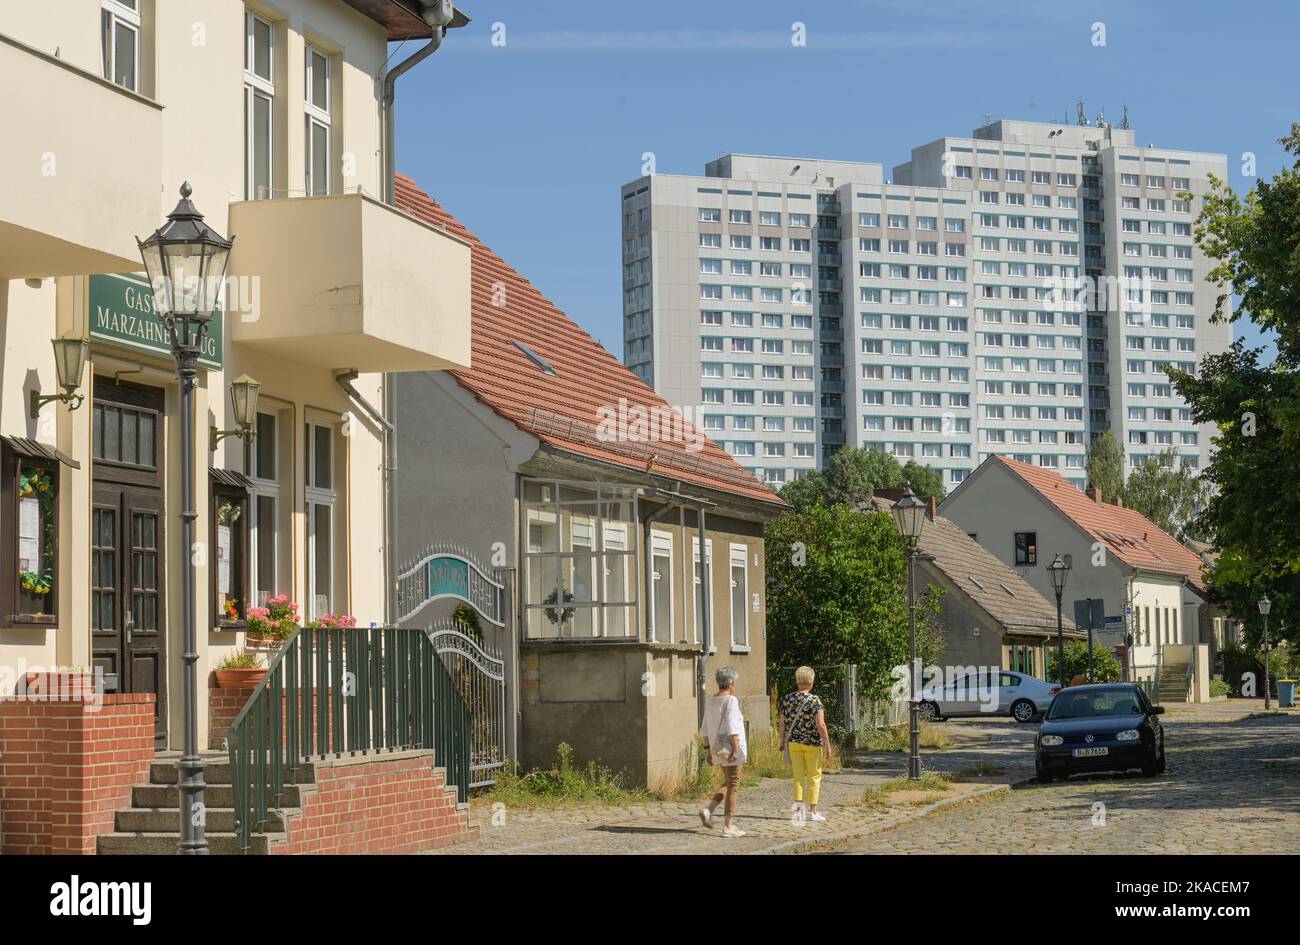 Altbauten, Dorfanger, Alt-Marzahn, Marzahn, Berlin, Deutschland Stock Photo